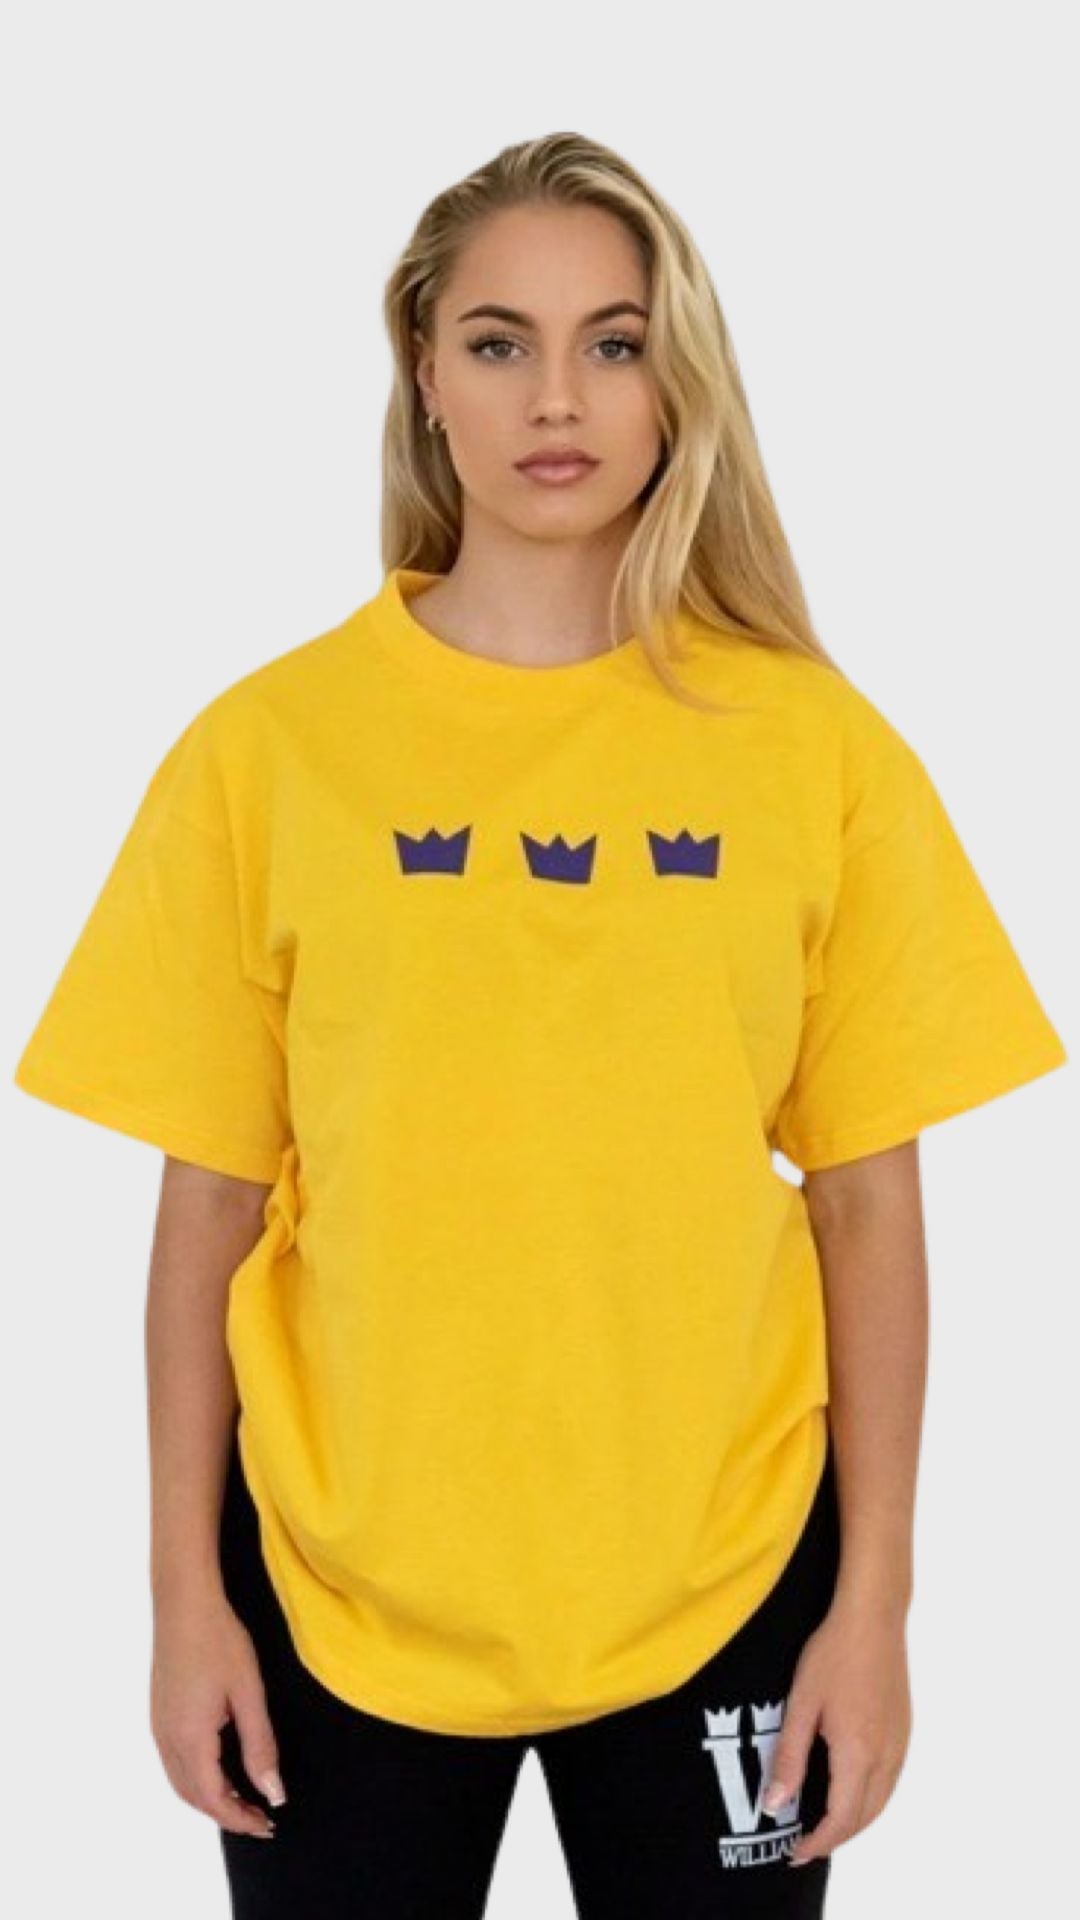 WILLIAM T-Shirt Yellow